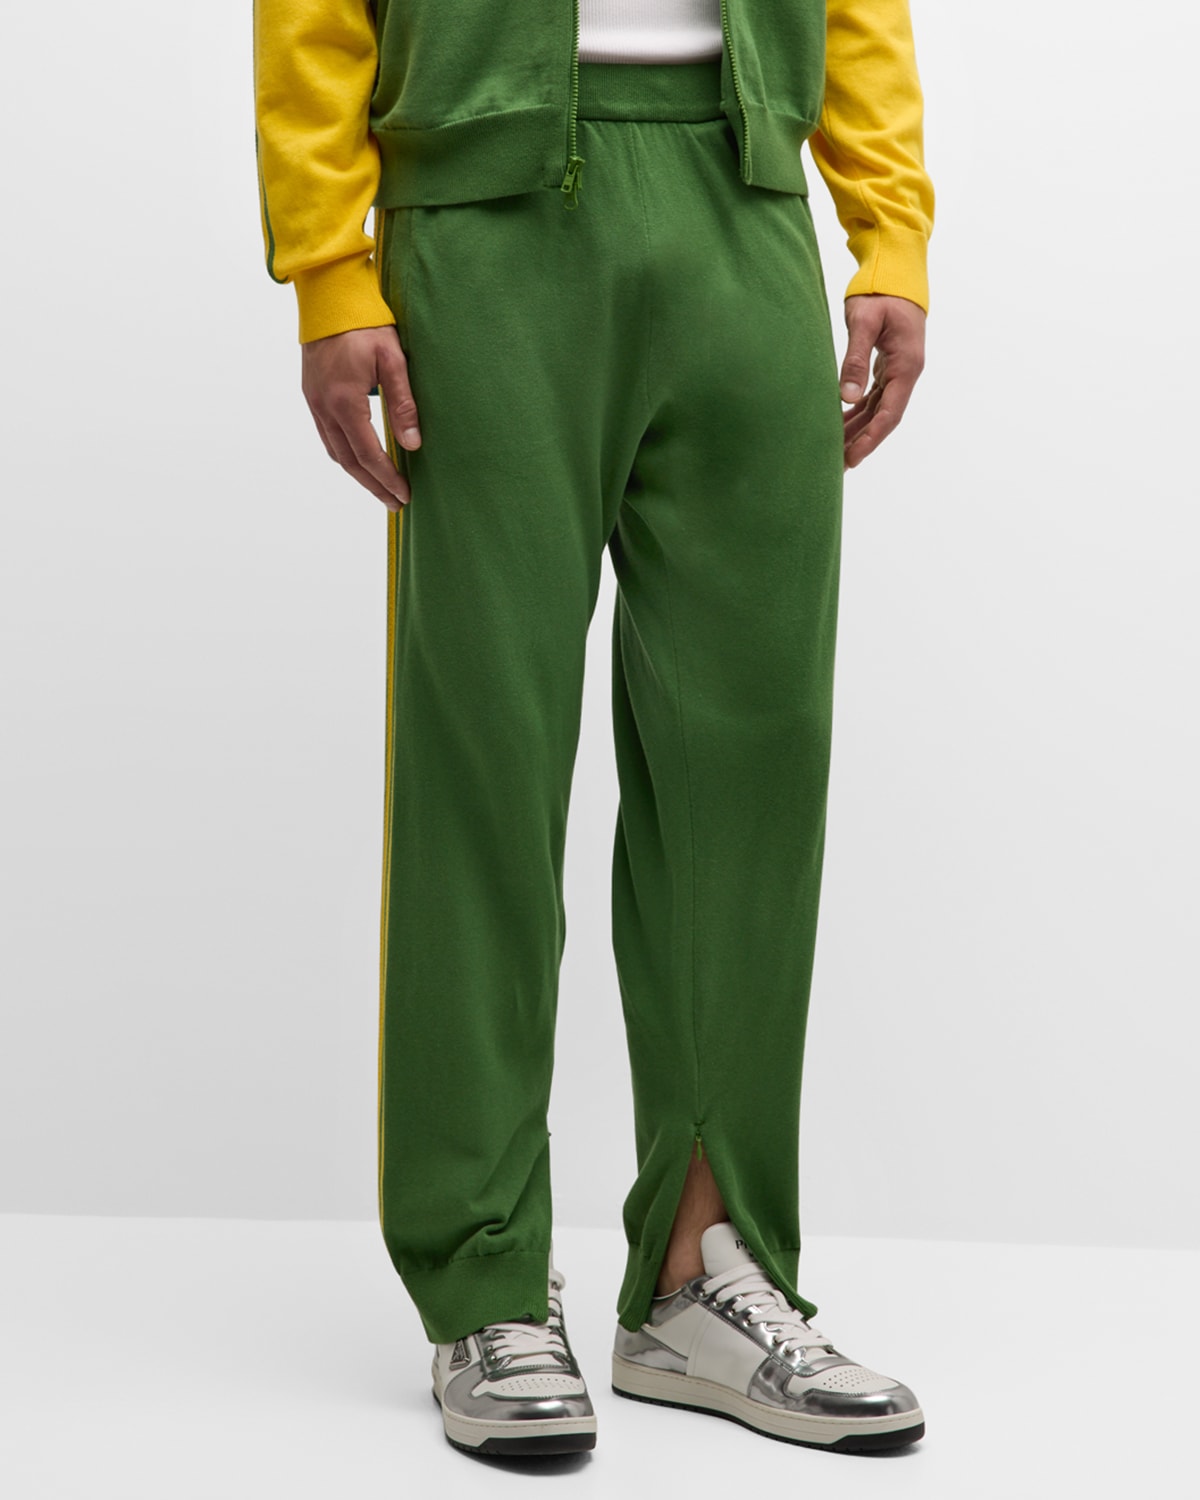 Adidas Originals X Wales Bonner Men's Track Pants In Green